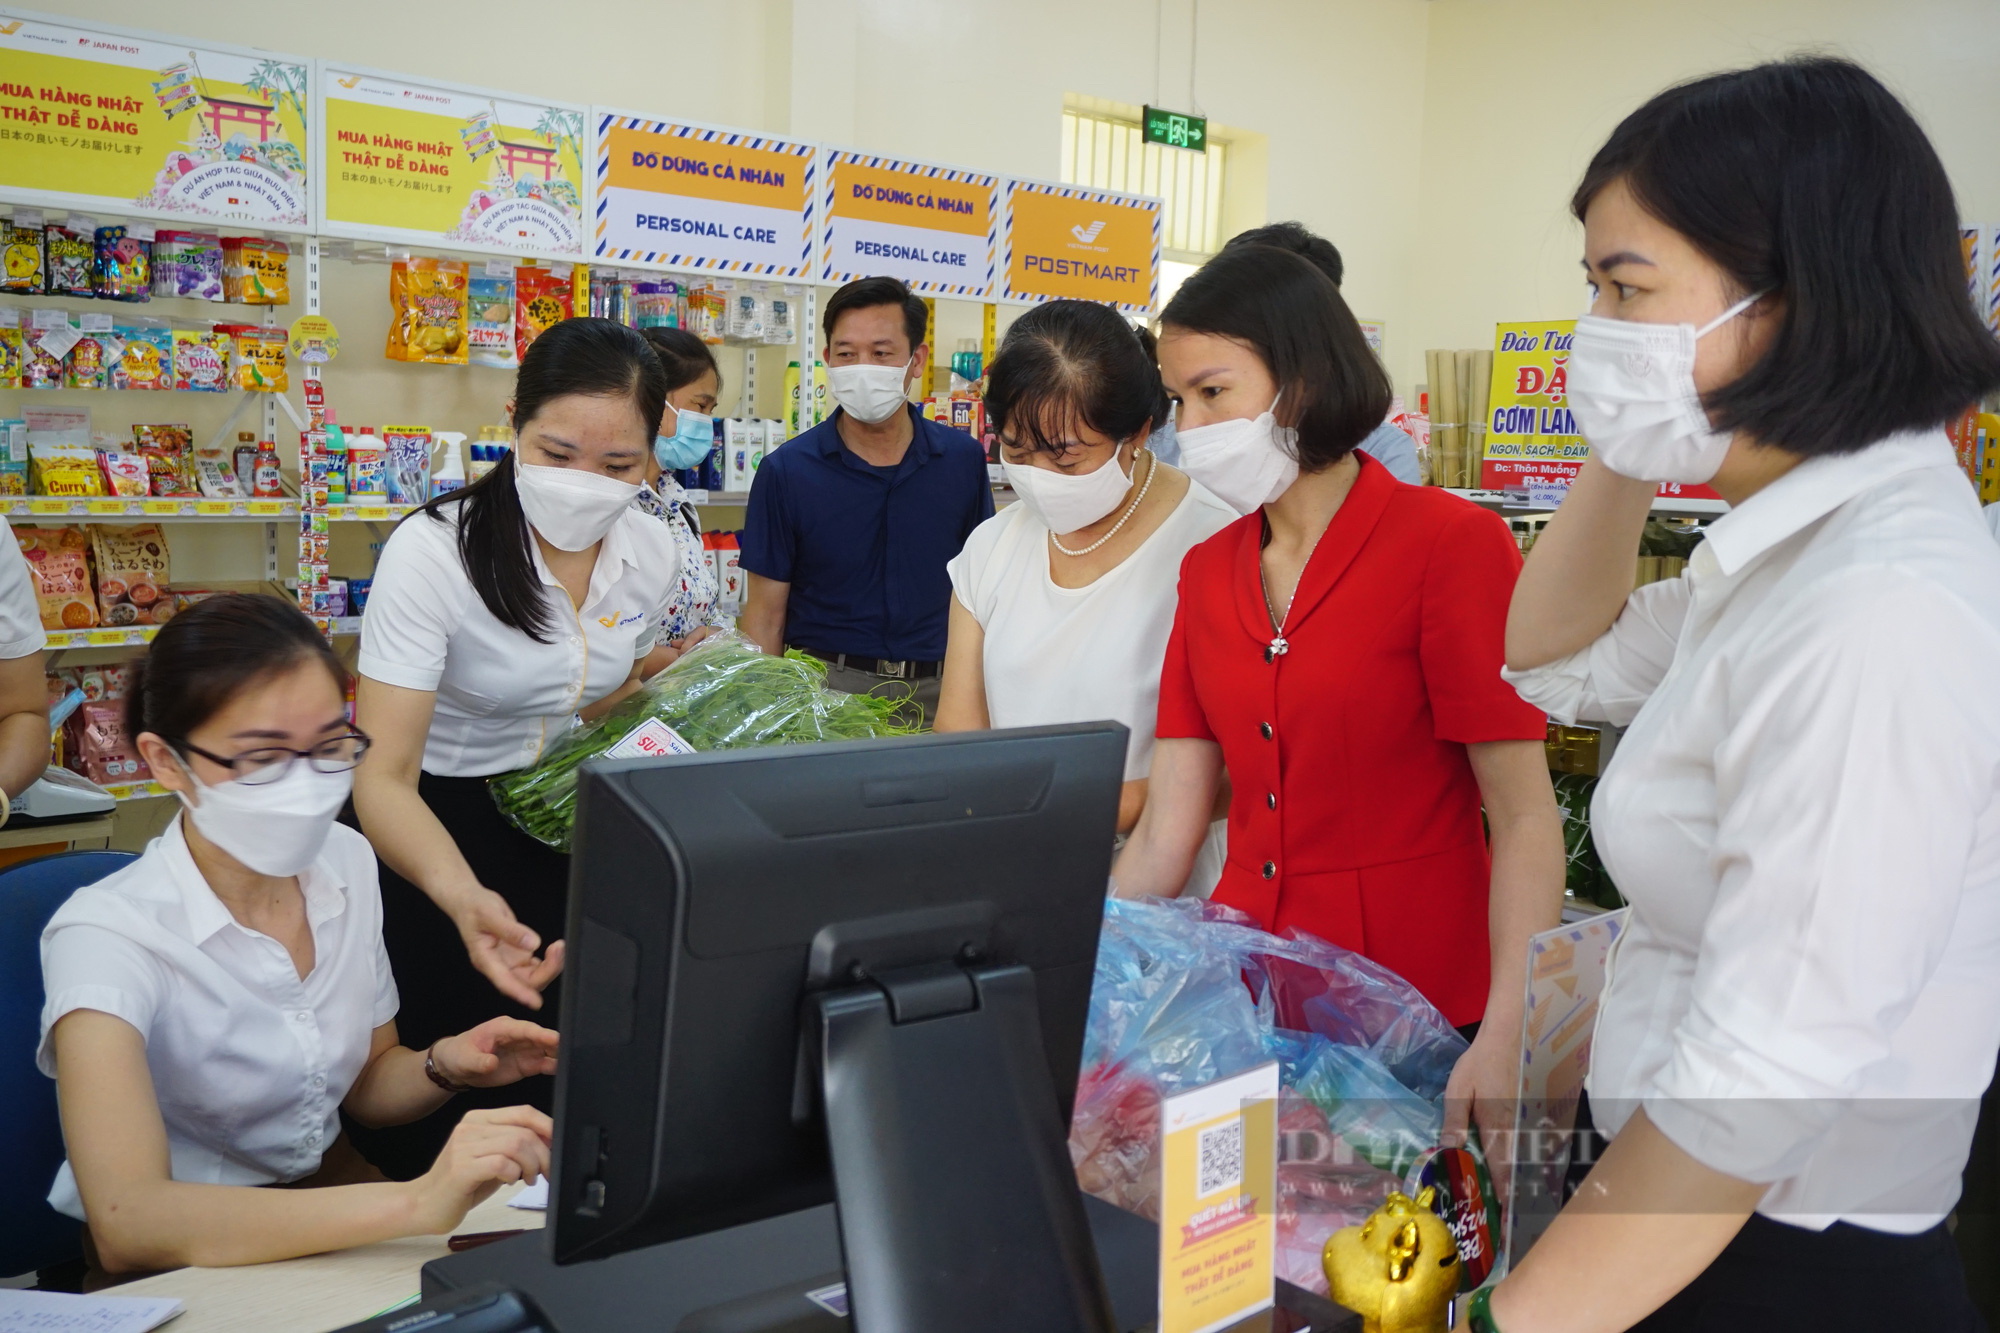 Hà Nội: Hội ND và Bưu điện khai trương gian hàng bán gà đồi, rau rừng và vô số nông sản đặc sản Ba Vì - Ảnh 9.